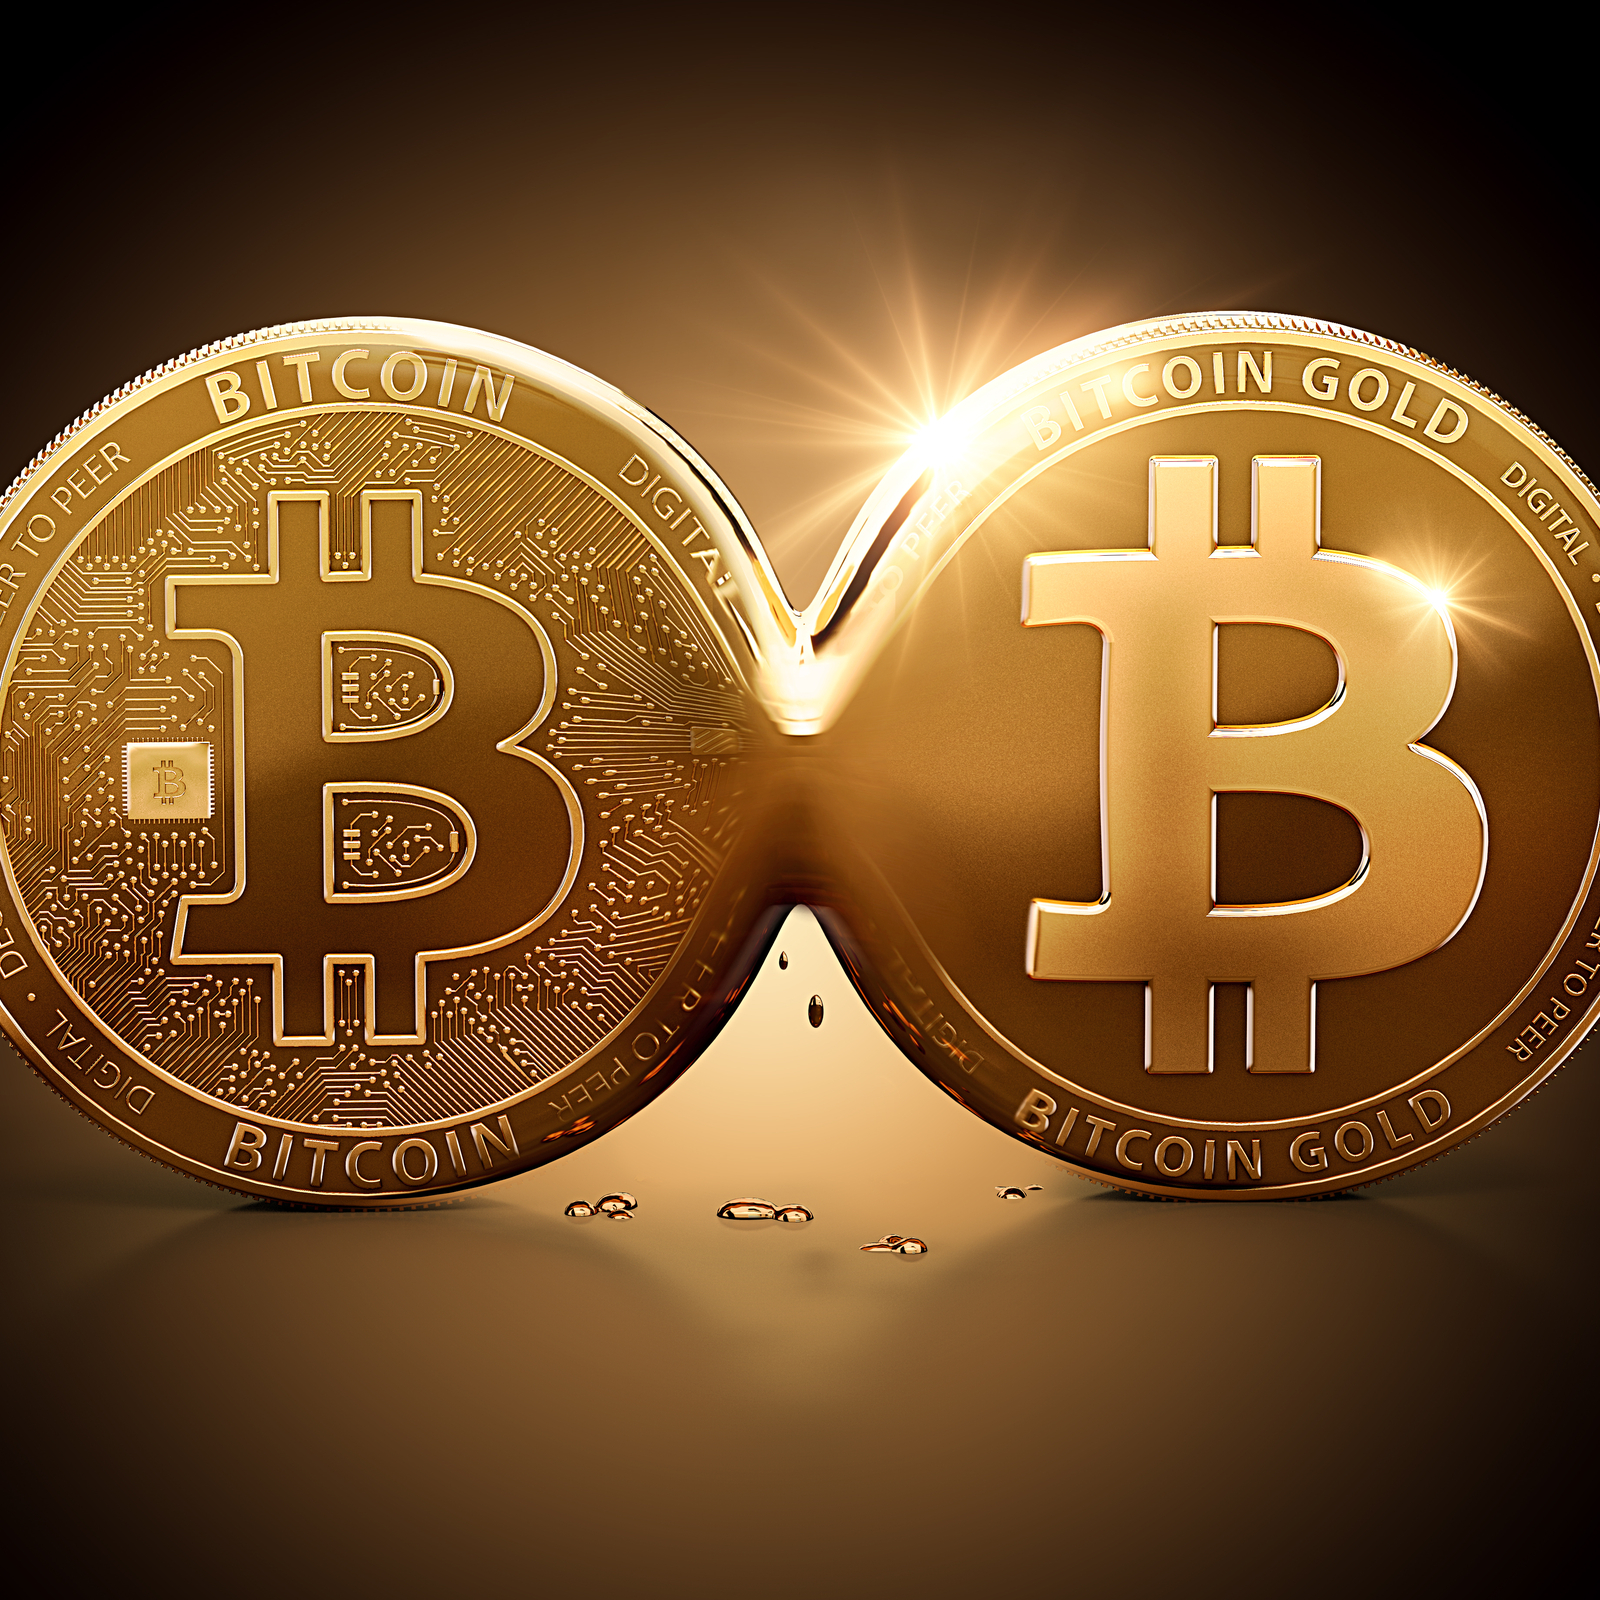 Bitcoinové zlato: případová studie o bezpečnostním problému s kryptoměnou